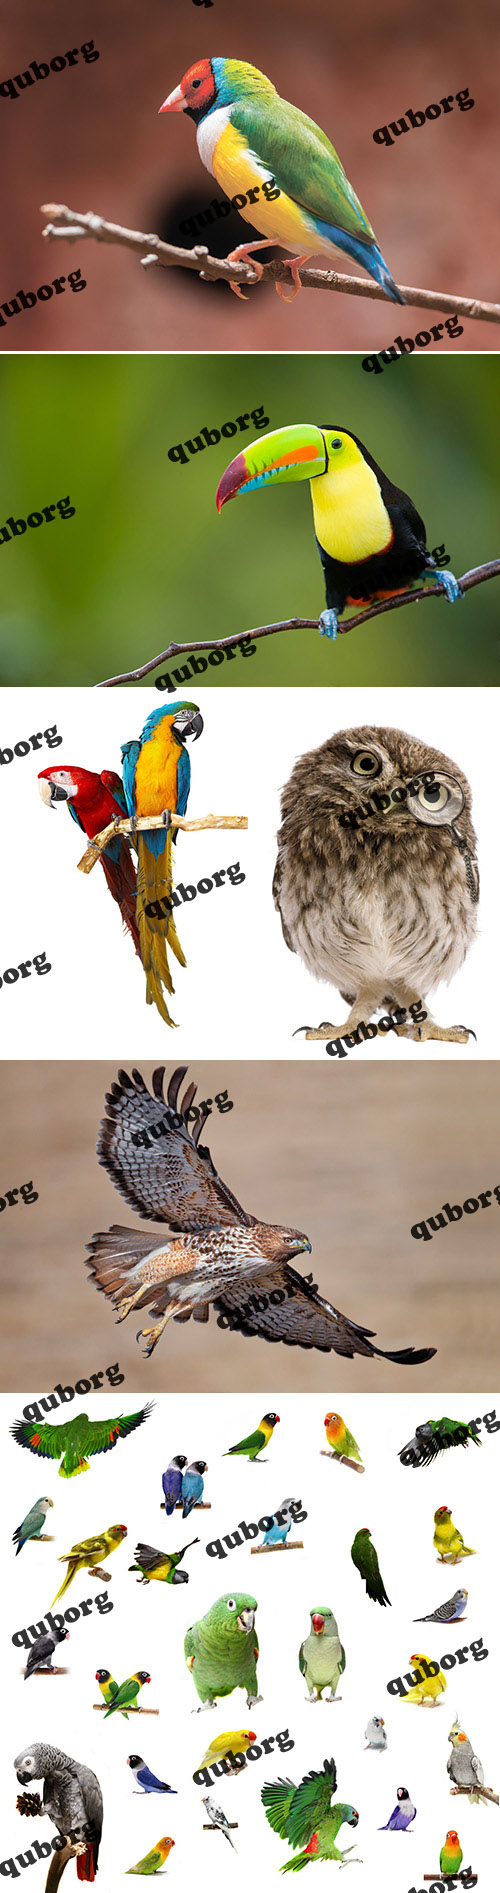 Stock Photos - Amazing Birds